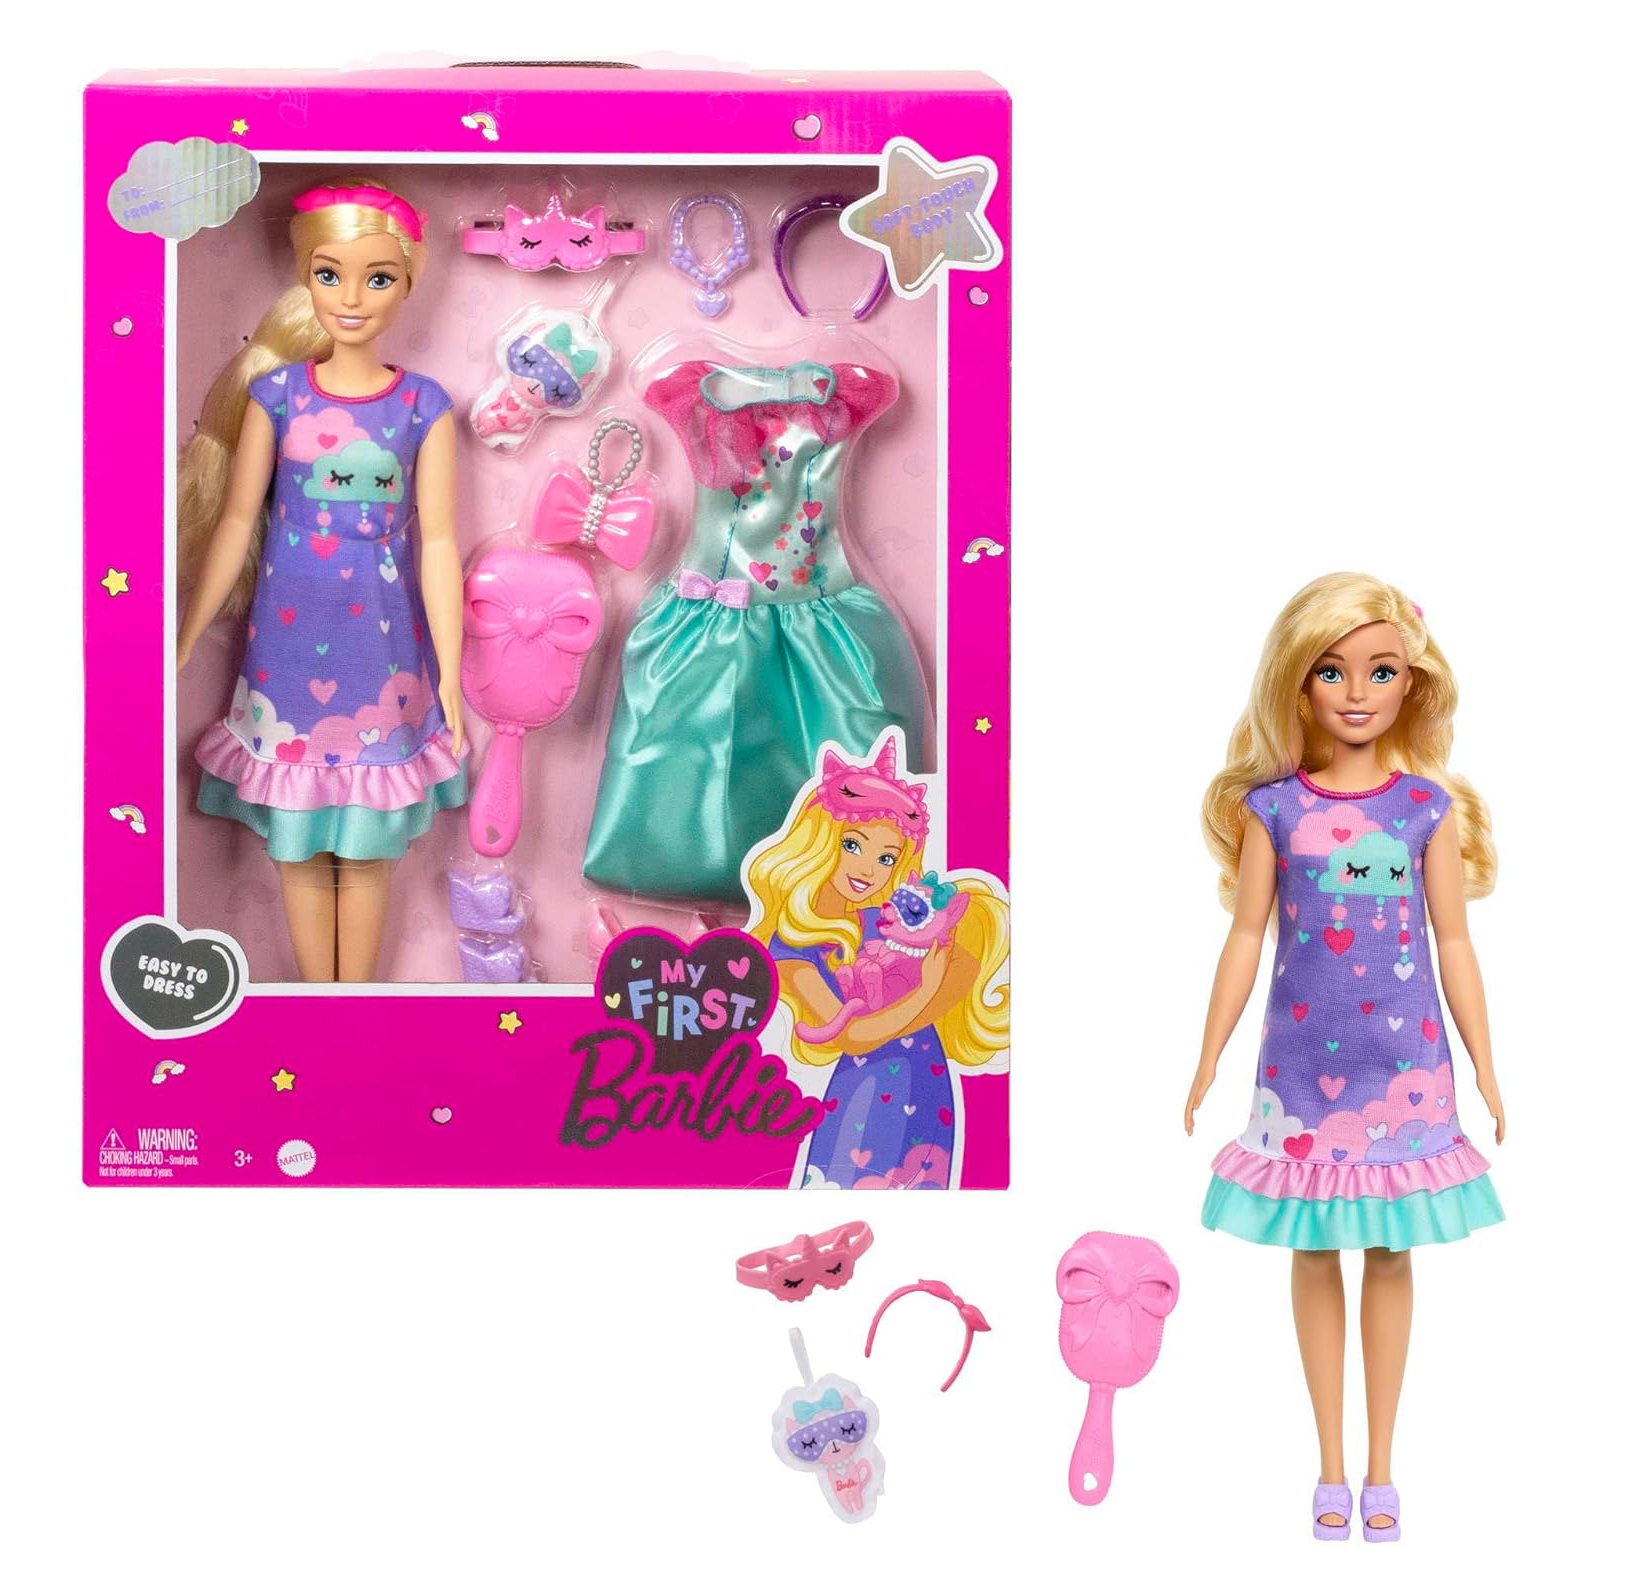 Barbie Mi Primera Barbie Deluxe Rubia Mattel Hmm66 